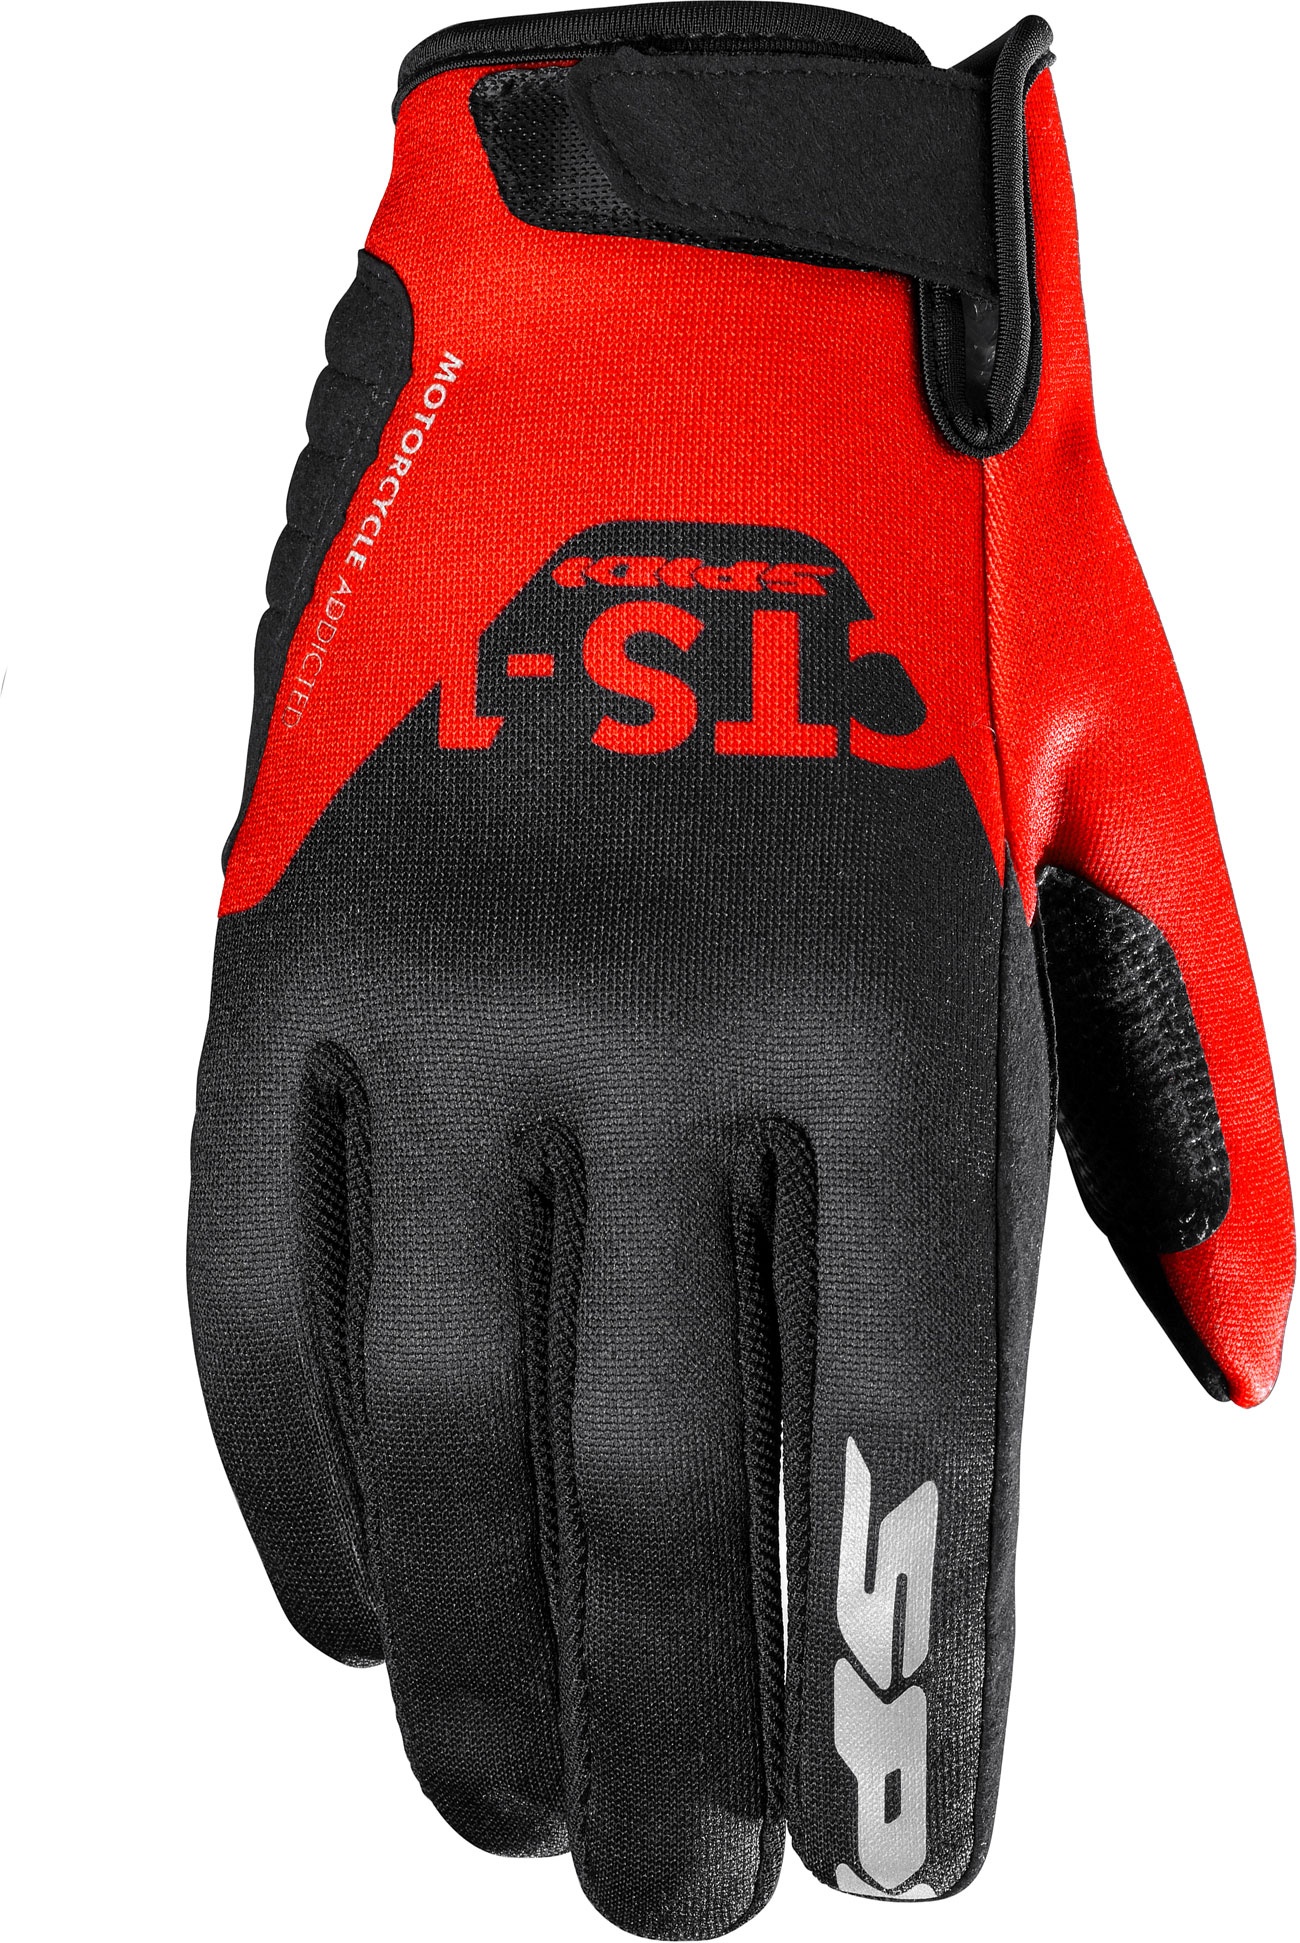 Spidi CTS-1, gants - Noir/Rouge - XL